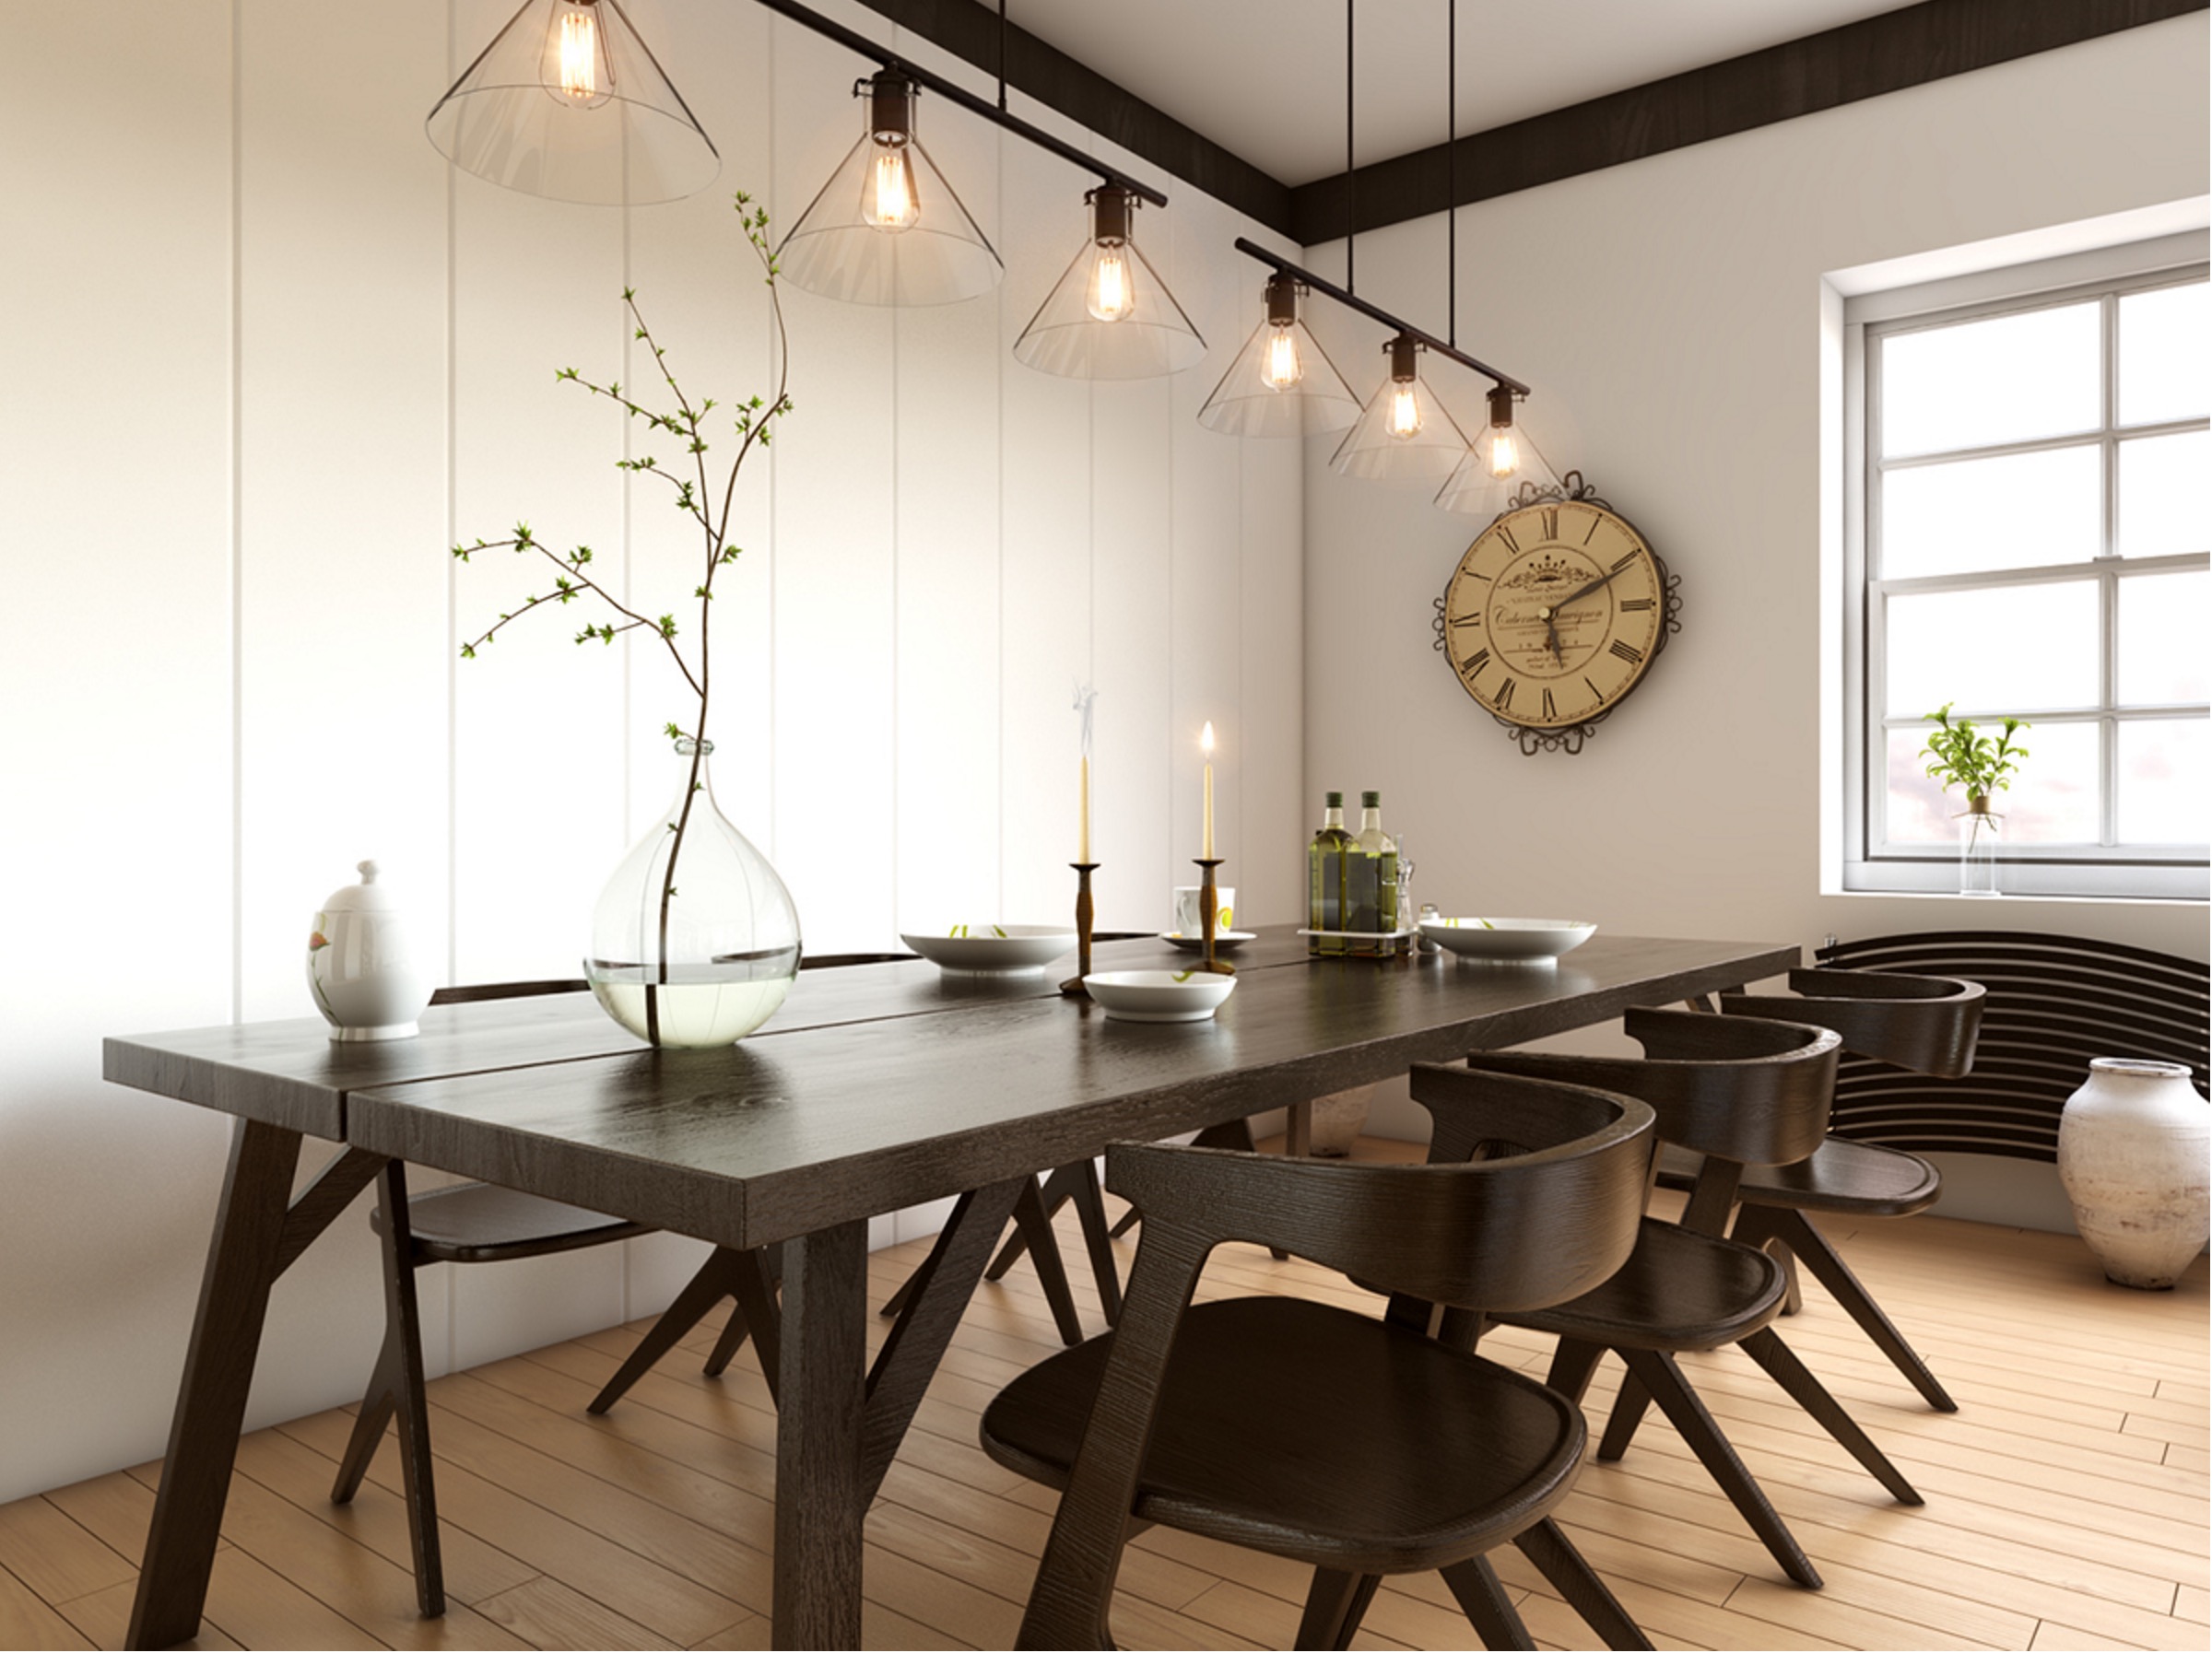 7 Inspirational Ideas For Dining Room, Dark Wood Dining Room Ideas